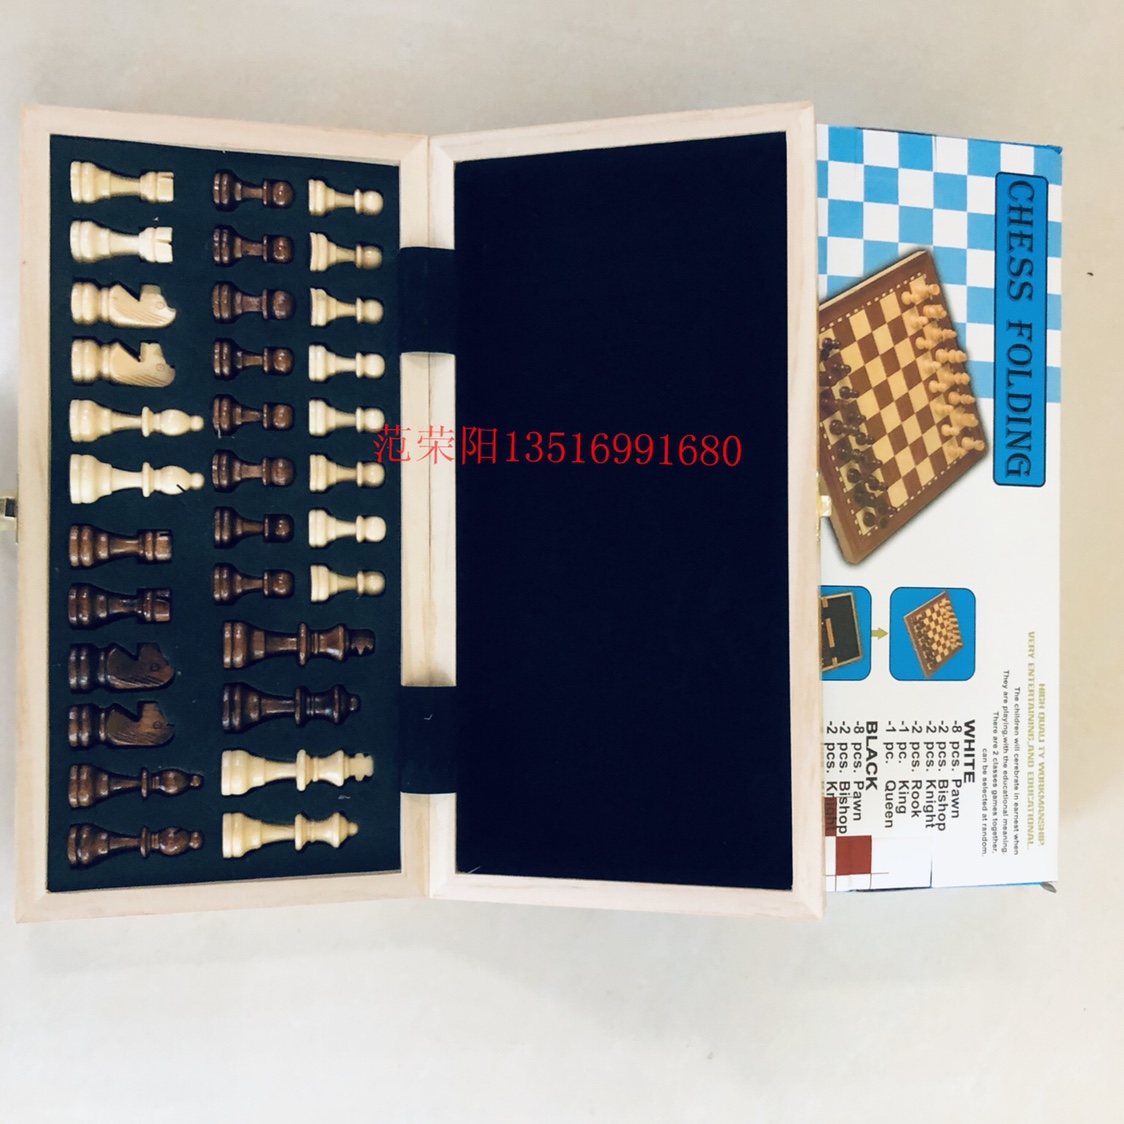 国际象棋 拼格贴木皮带磁国际象棋 盒子尺寸29x14.5x4.8公分详情图3